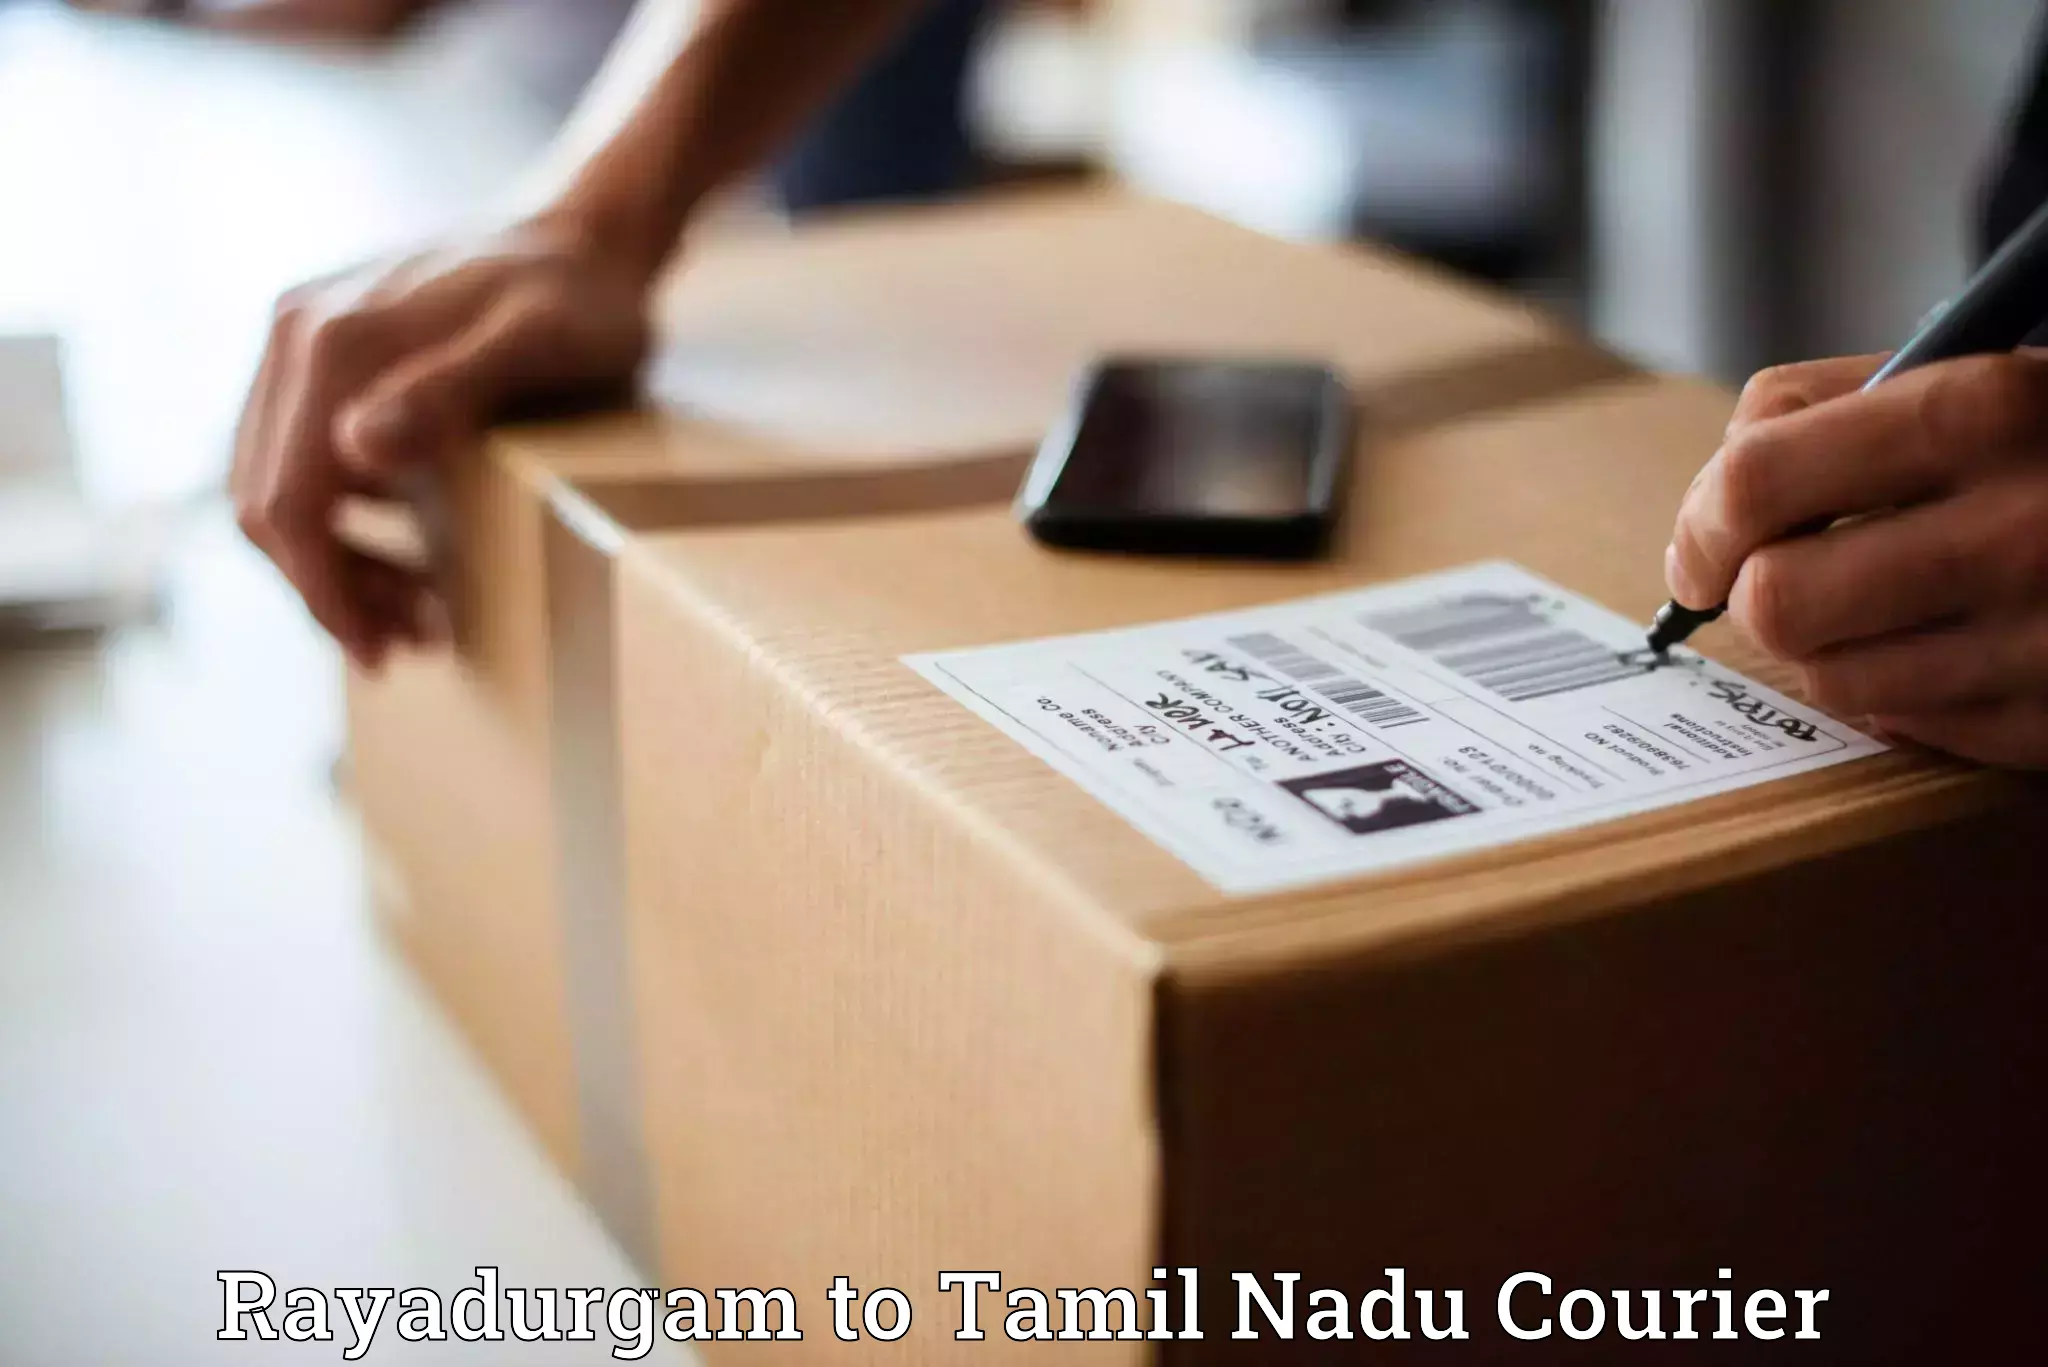 Nationwide delivery network Rayadurgam to Rathinasabapathy Puram